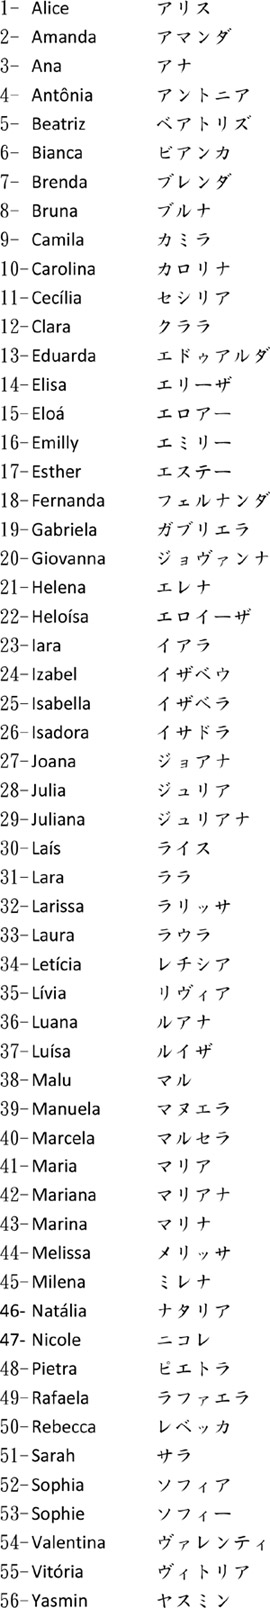 Nomes japoneses mais populares de 2013 .::. Especial NippoBrasil